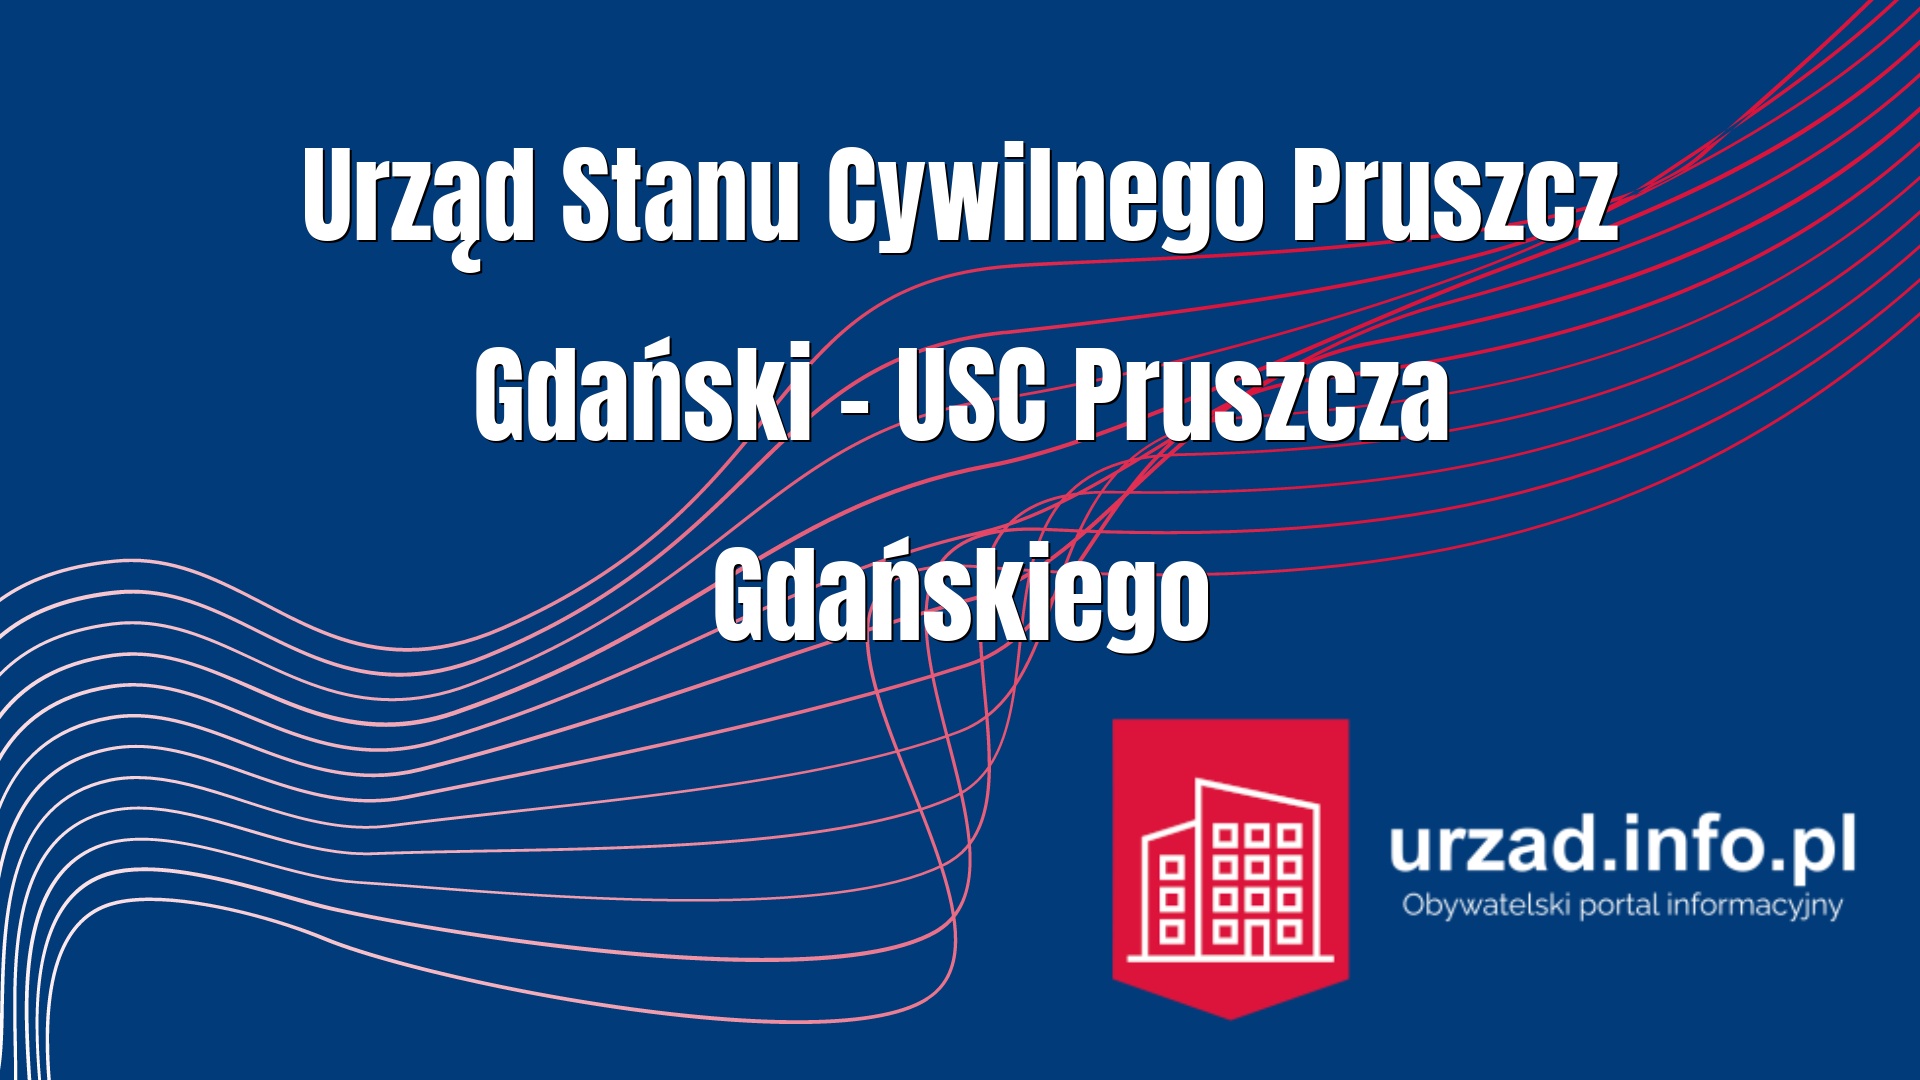 Urząd Stanu Cywilnego Pruszcz Gdański – USC Pruszcza Gdańskiego